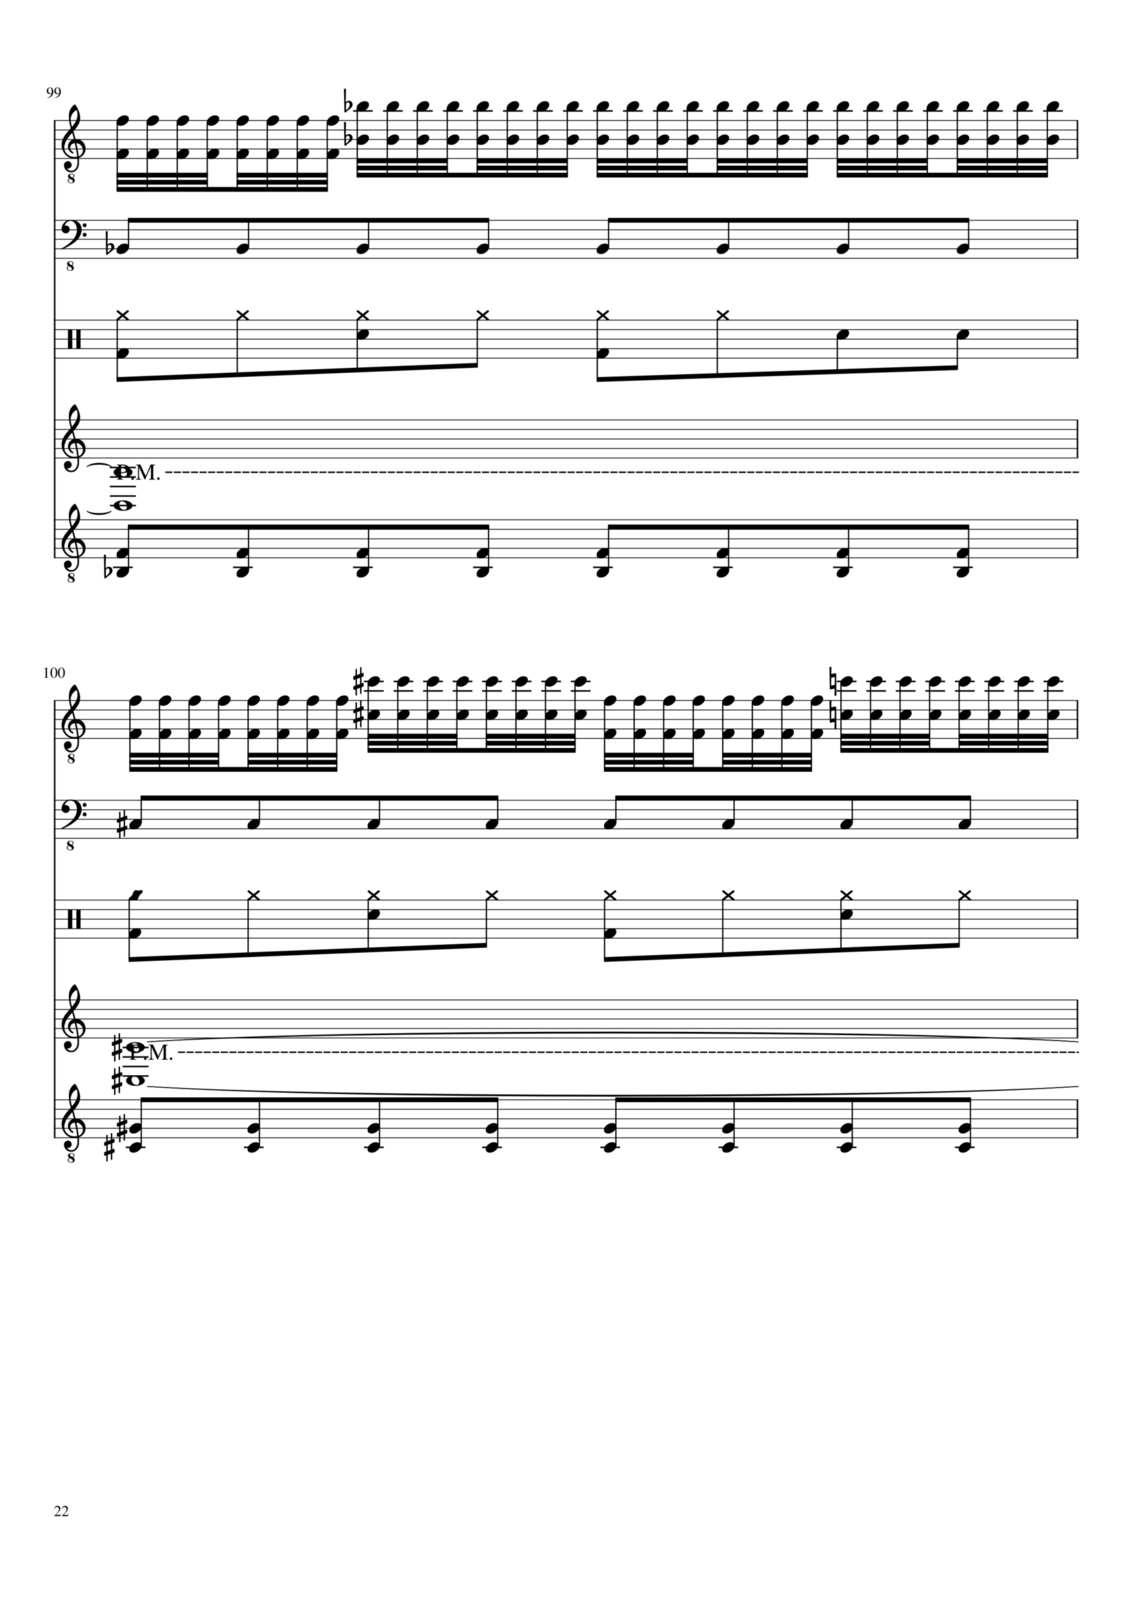 Vechnaya prizrachnaya vstrechnaya slide, Image 22